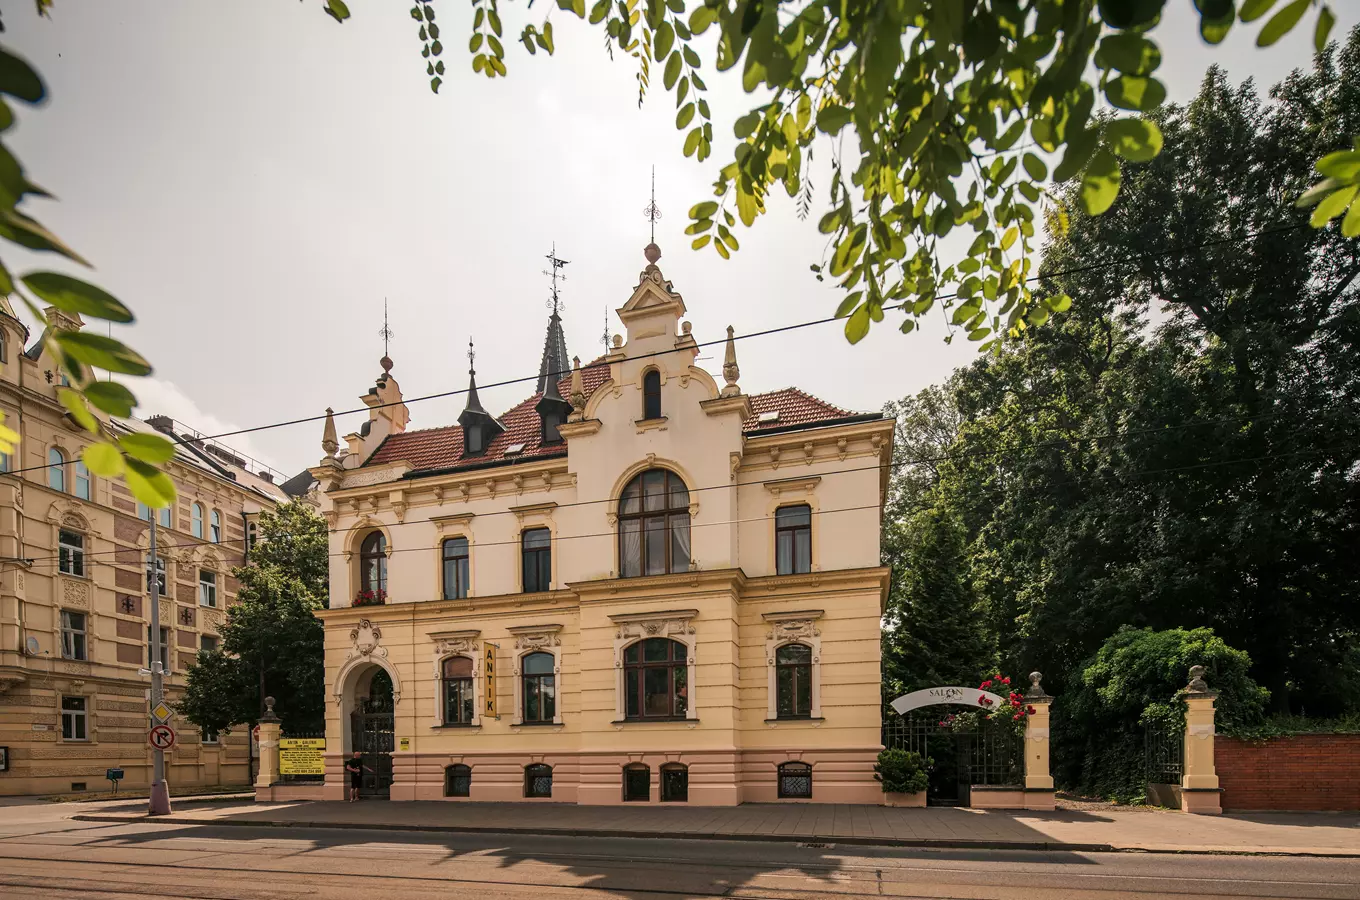 Komentovaná prohlídka – Za branami města Olomouce